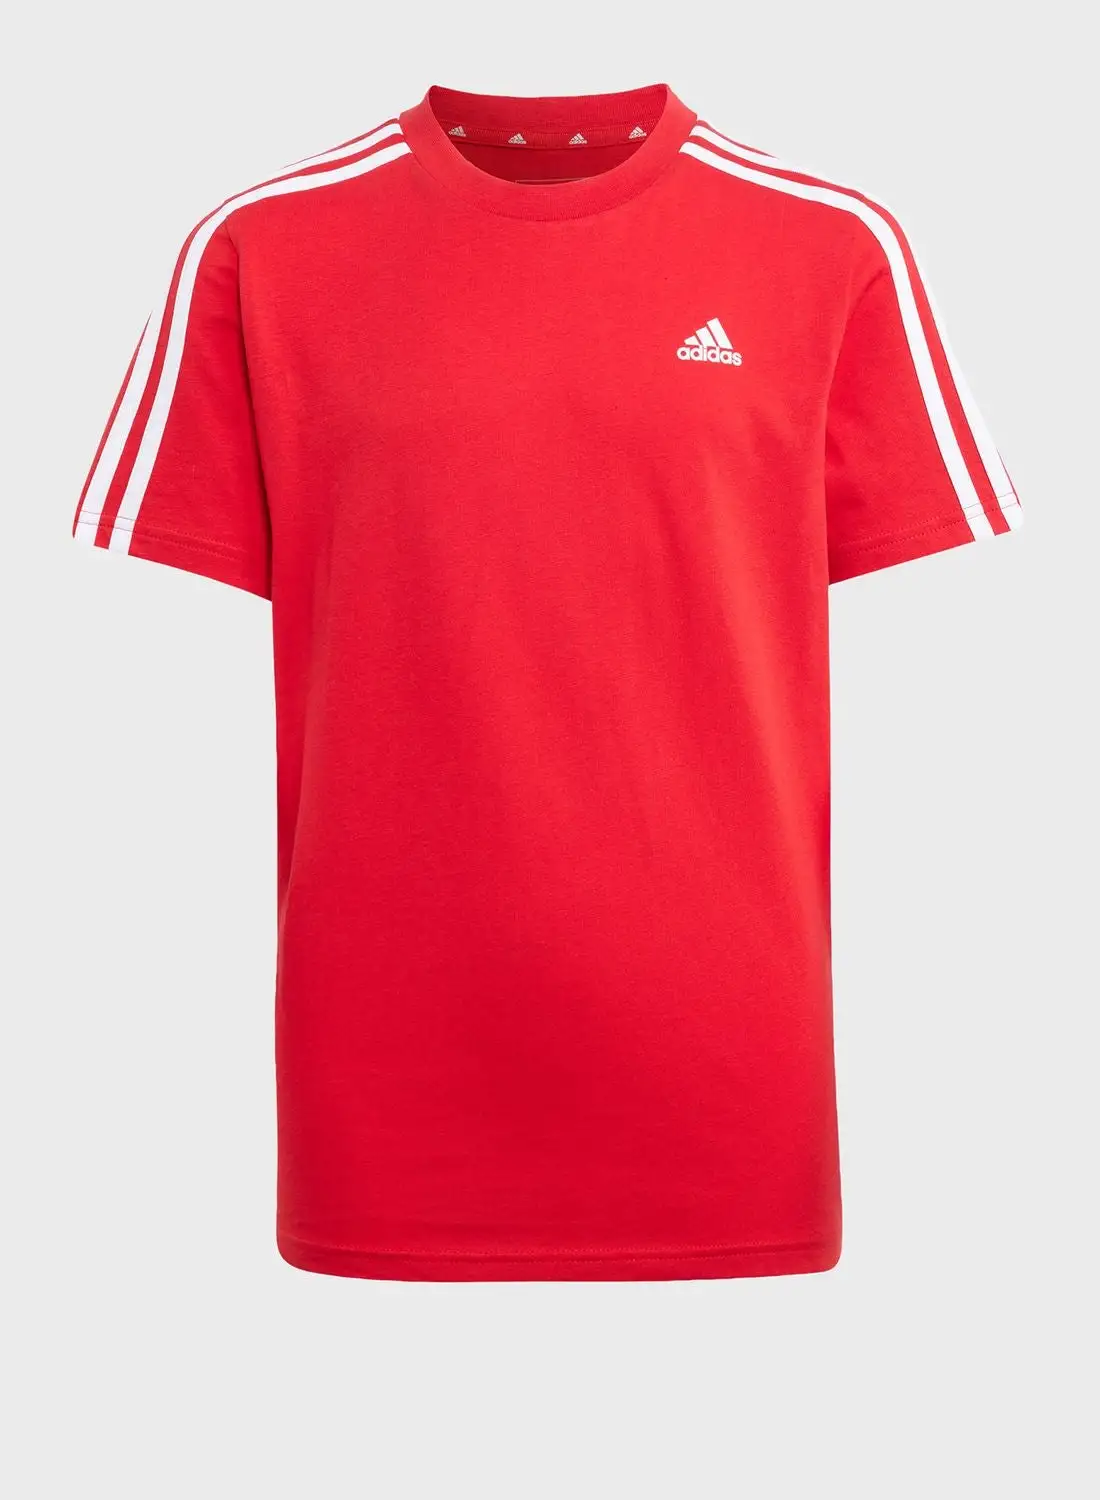 Adidas 3 Stripes T-Shirt